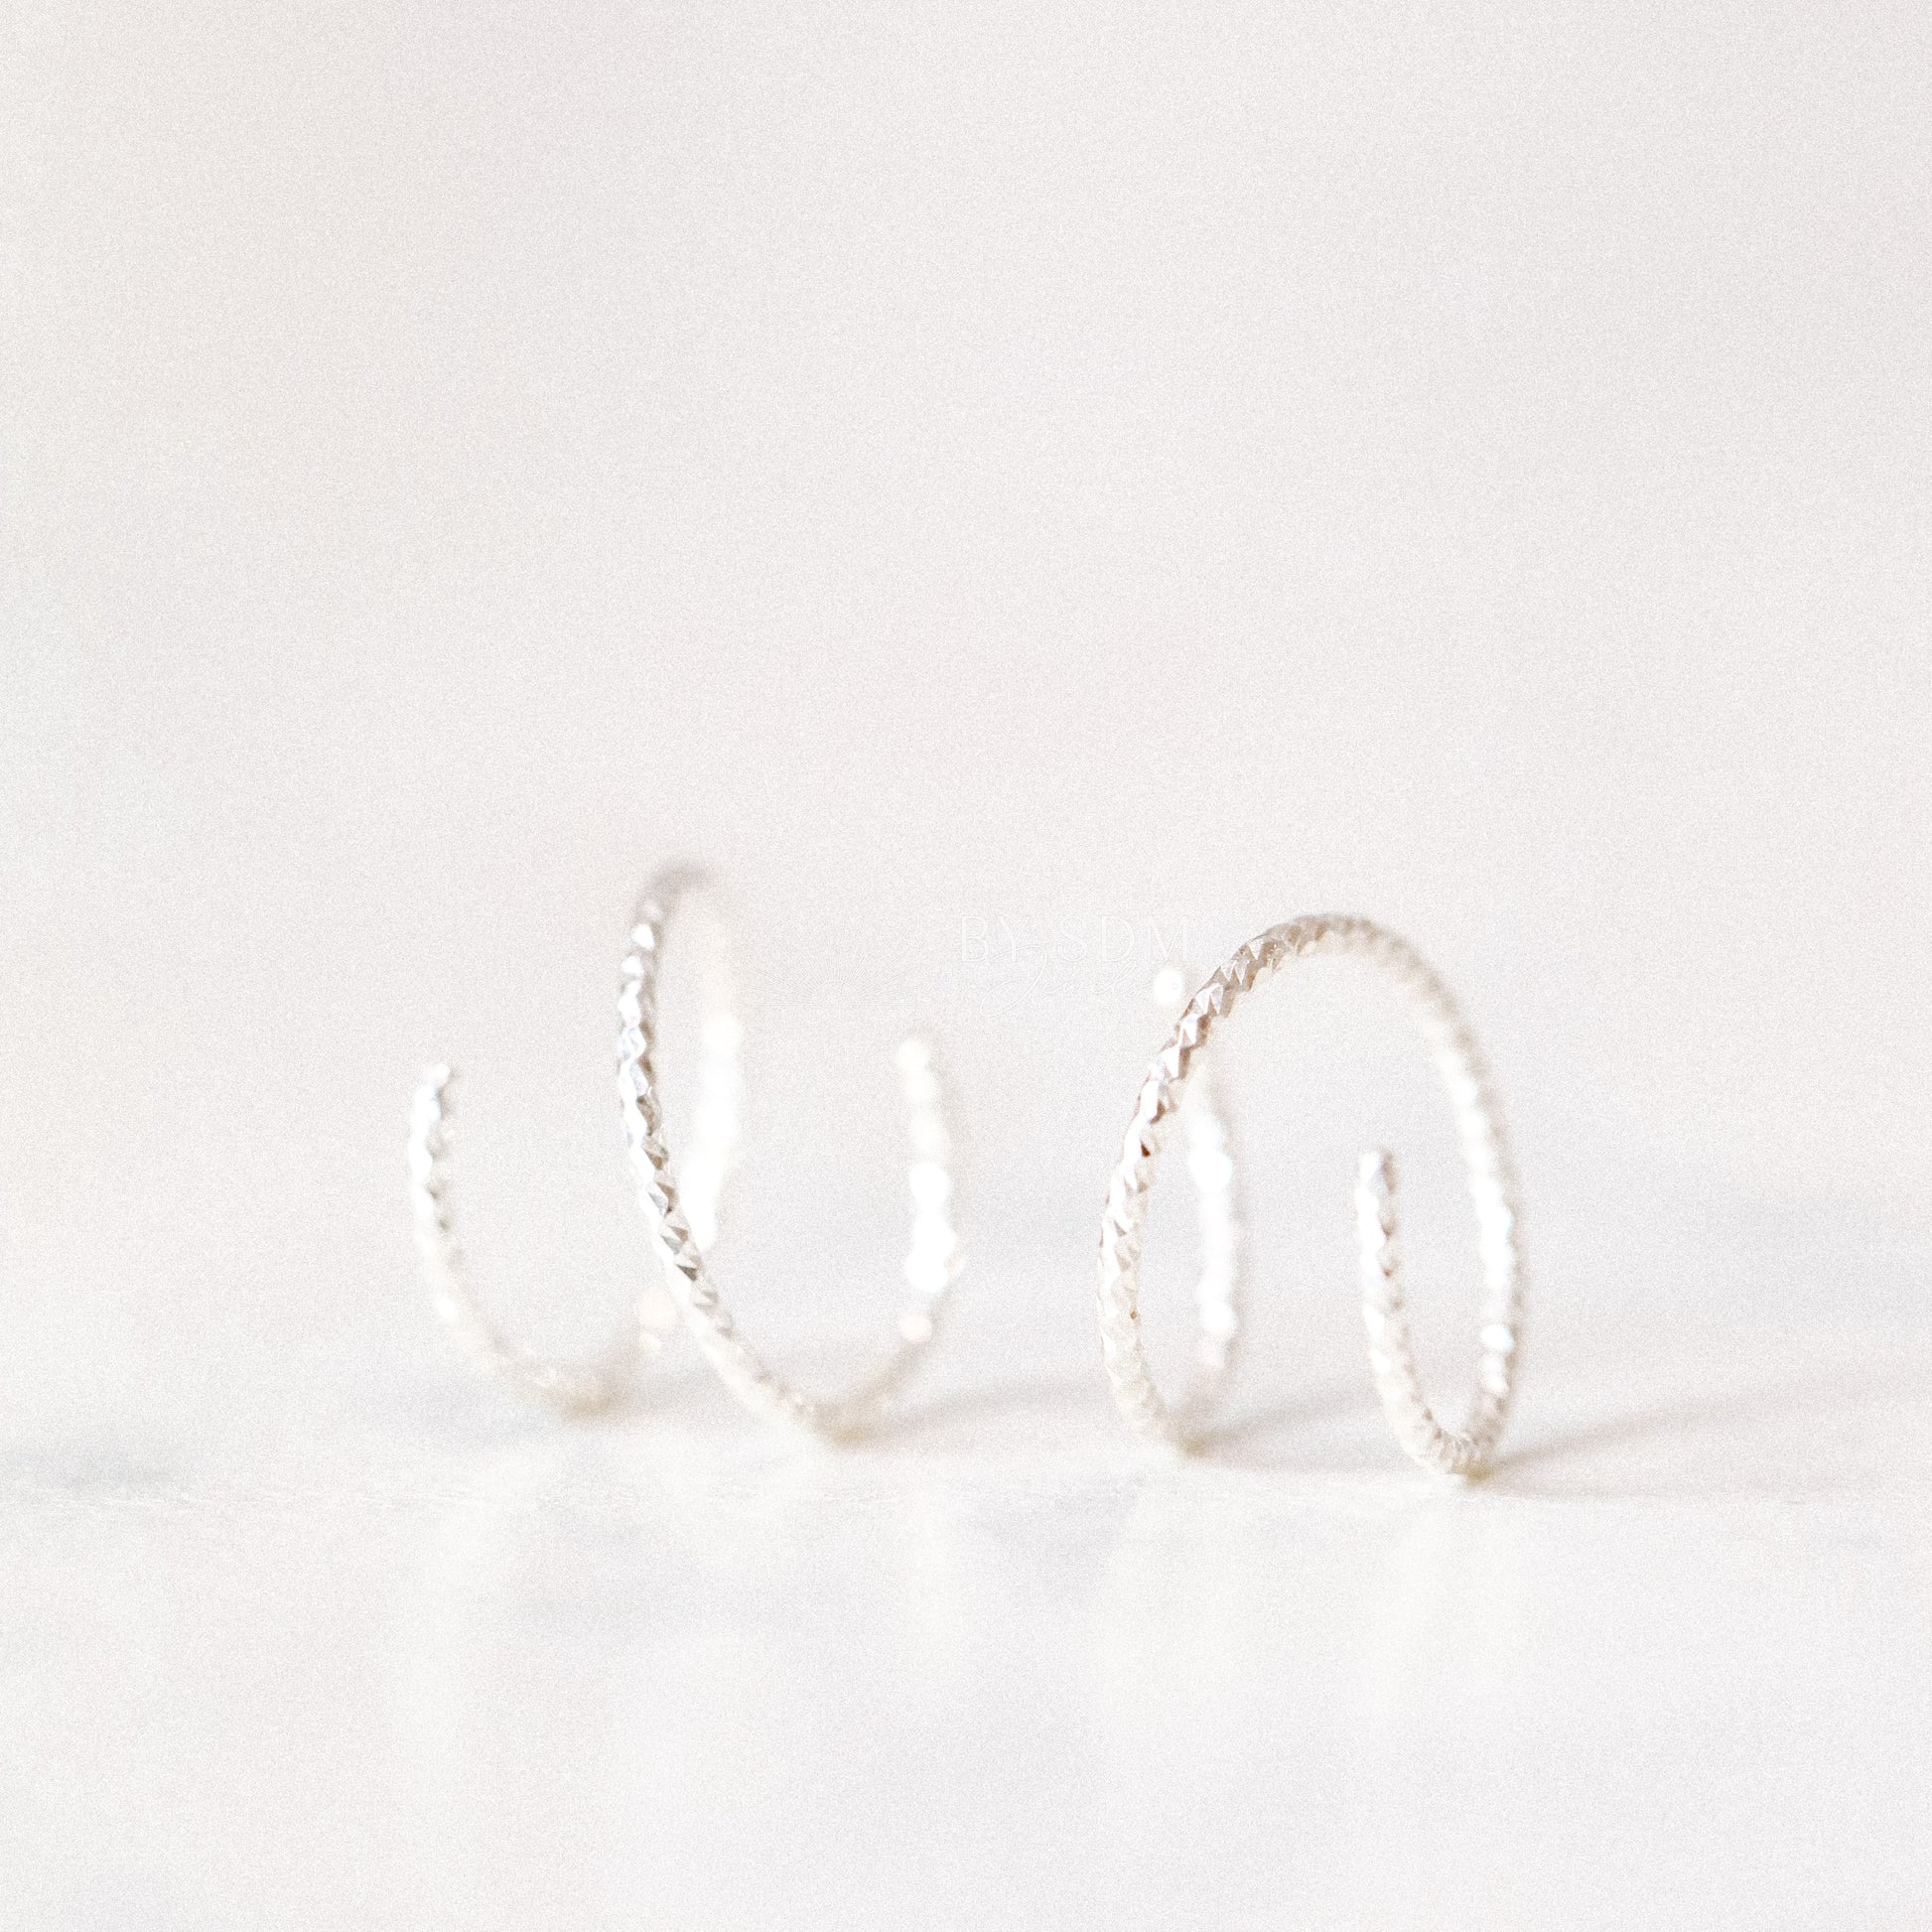 Huggie Hoop Earrings Tiny Spiral Earrings Small Hoop Earrings Hug Hoops Textured Open Hoop Earrings Diamond Cut Double Hole Earrings